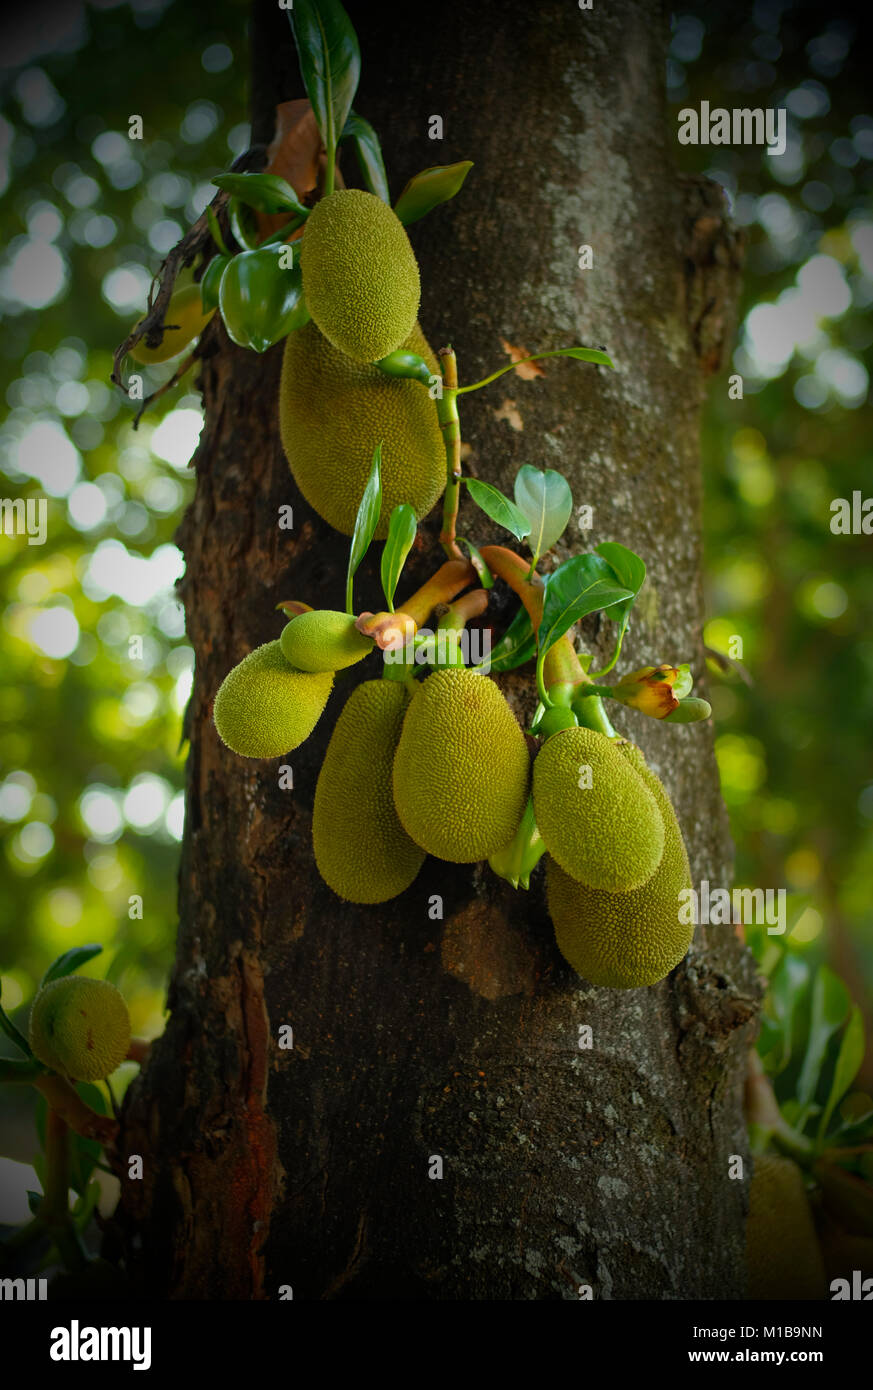 Jackfruit (Artocarpus heterophyllus) on tree. Chiang Mai, Thailand. Stock Photo